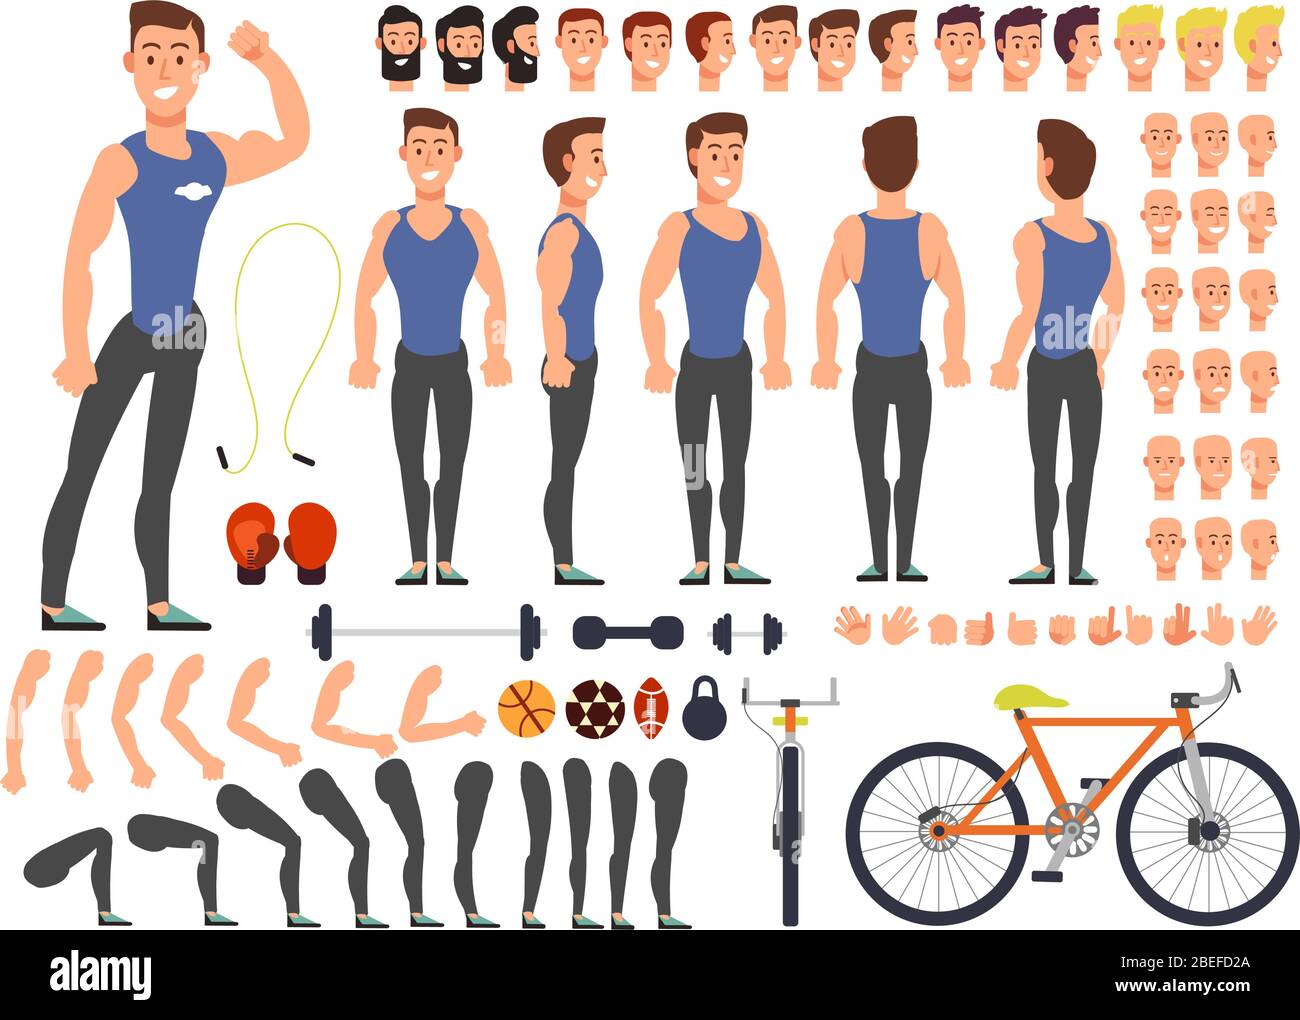 Cartoon Mann Sportler Vektor Charakter Konstruktor mit Satz von Körperteilen und Sportgeräte. Charakter Mann mit Sport, Ausrüstung Illustration Stock Vektor